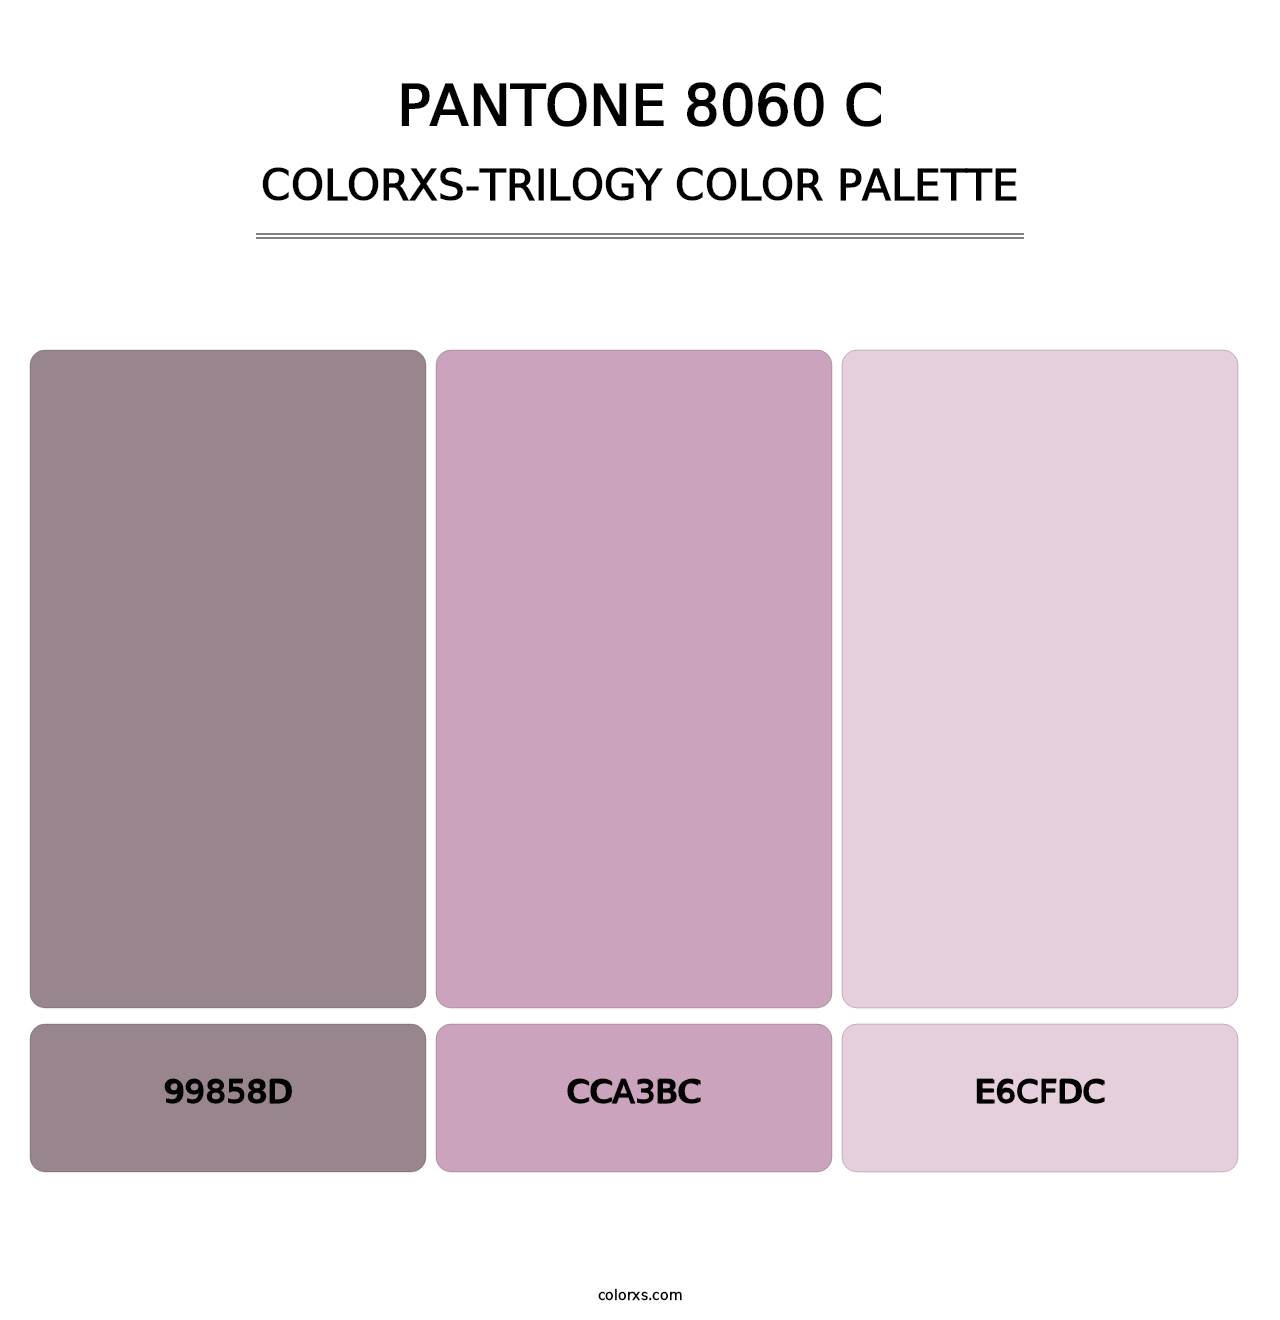 PANTONE 8060 C - Colorxs Trilogy Palette